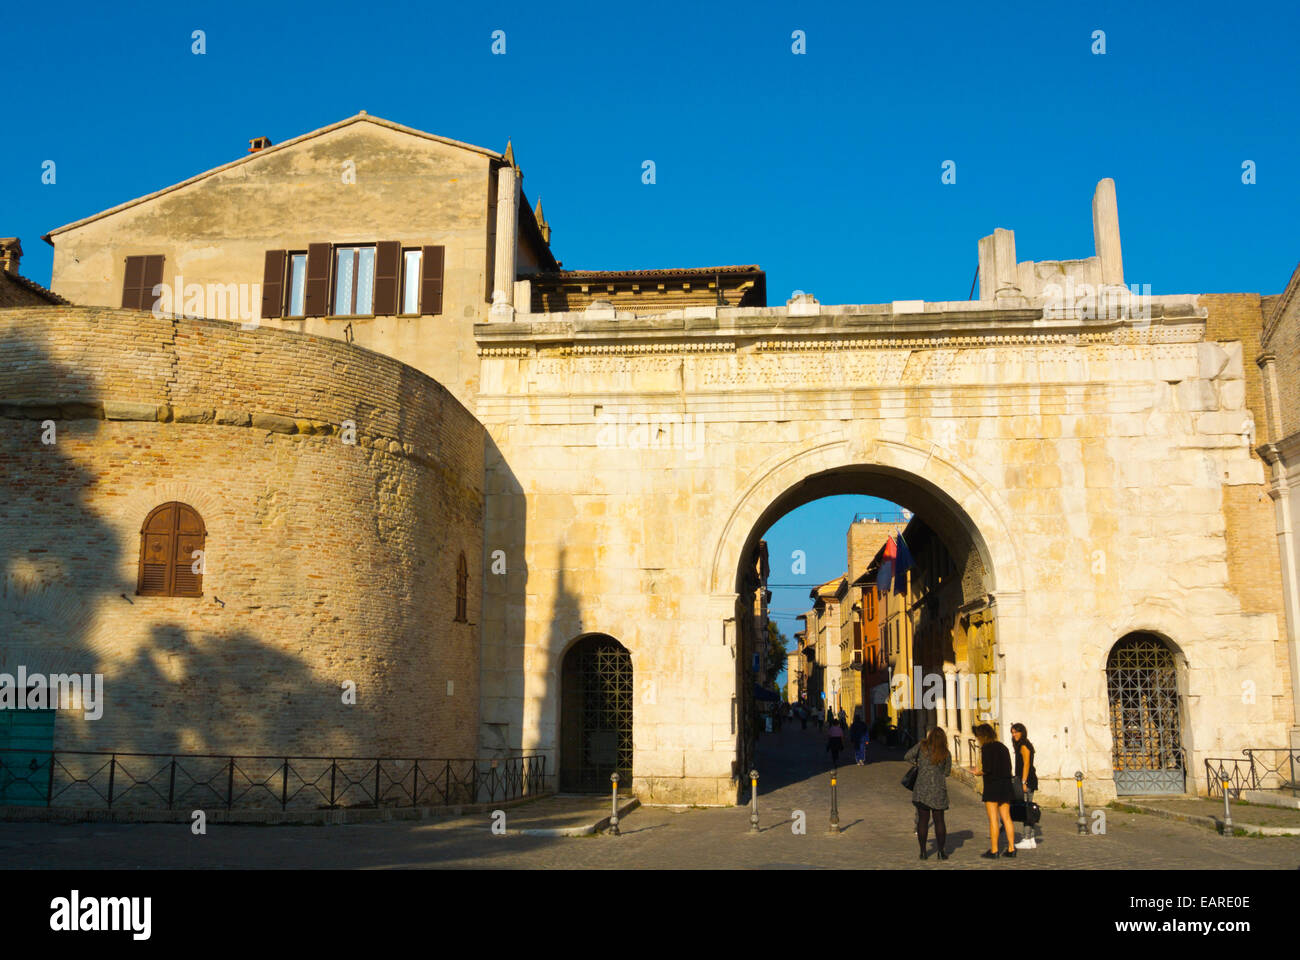 Arco di Augusto, Arch of Augustus, Fano, Marche region, Italy Stock Photo